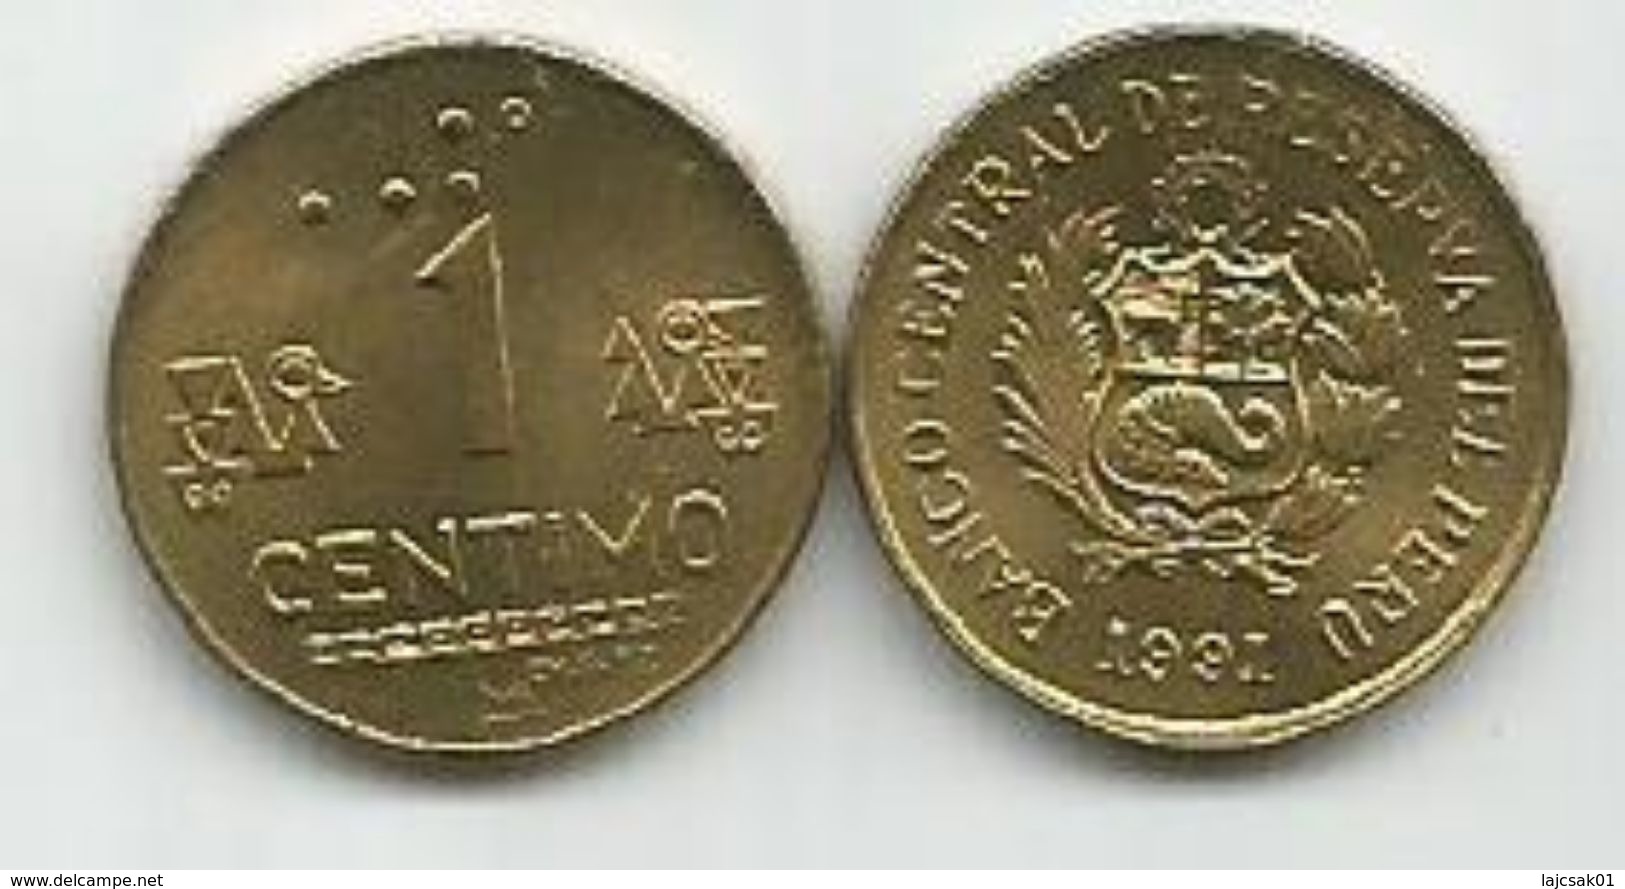 Peru 1 Centimo 1991. KM#303.1 High Grade - Pérou